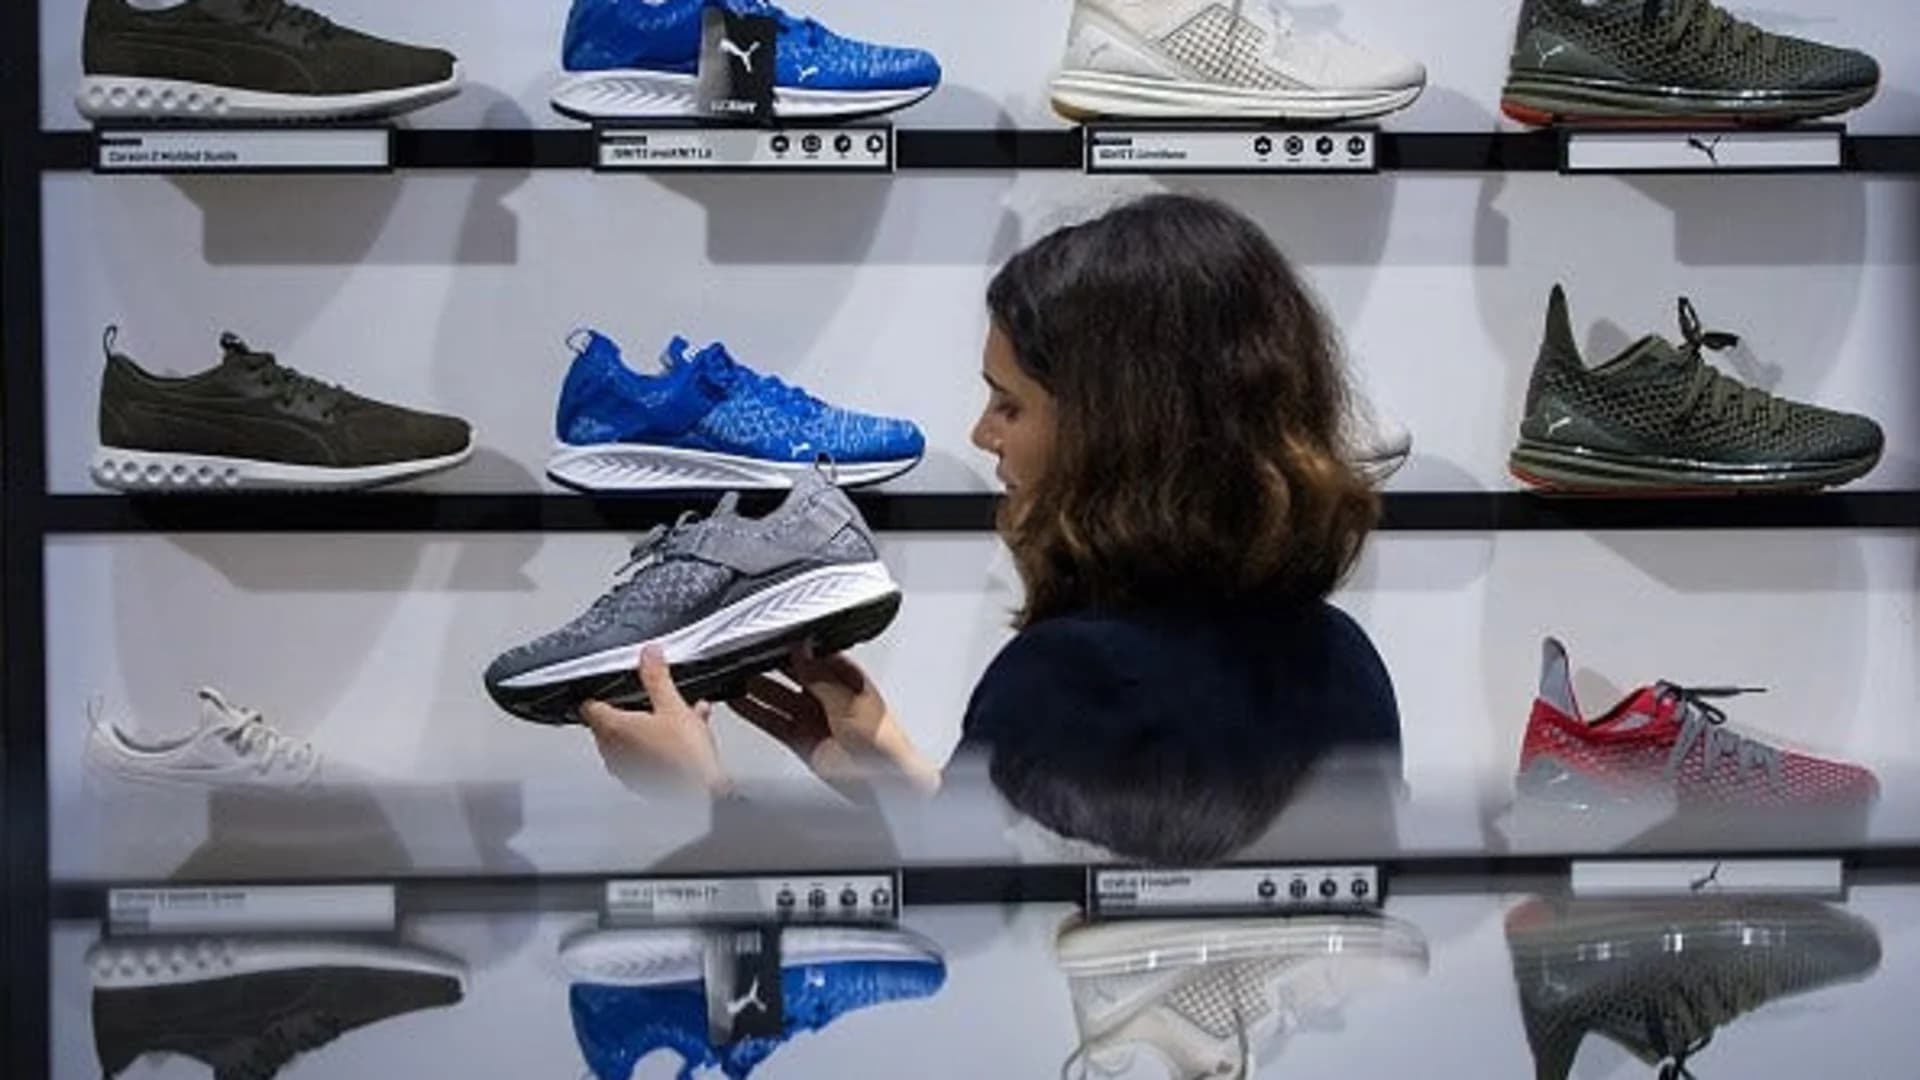 #N12BX: Women's athletic footwear sales soar